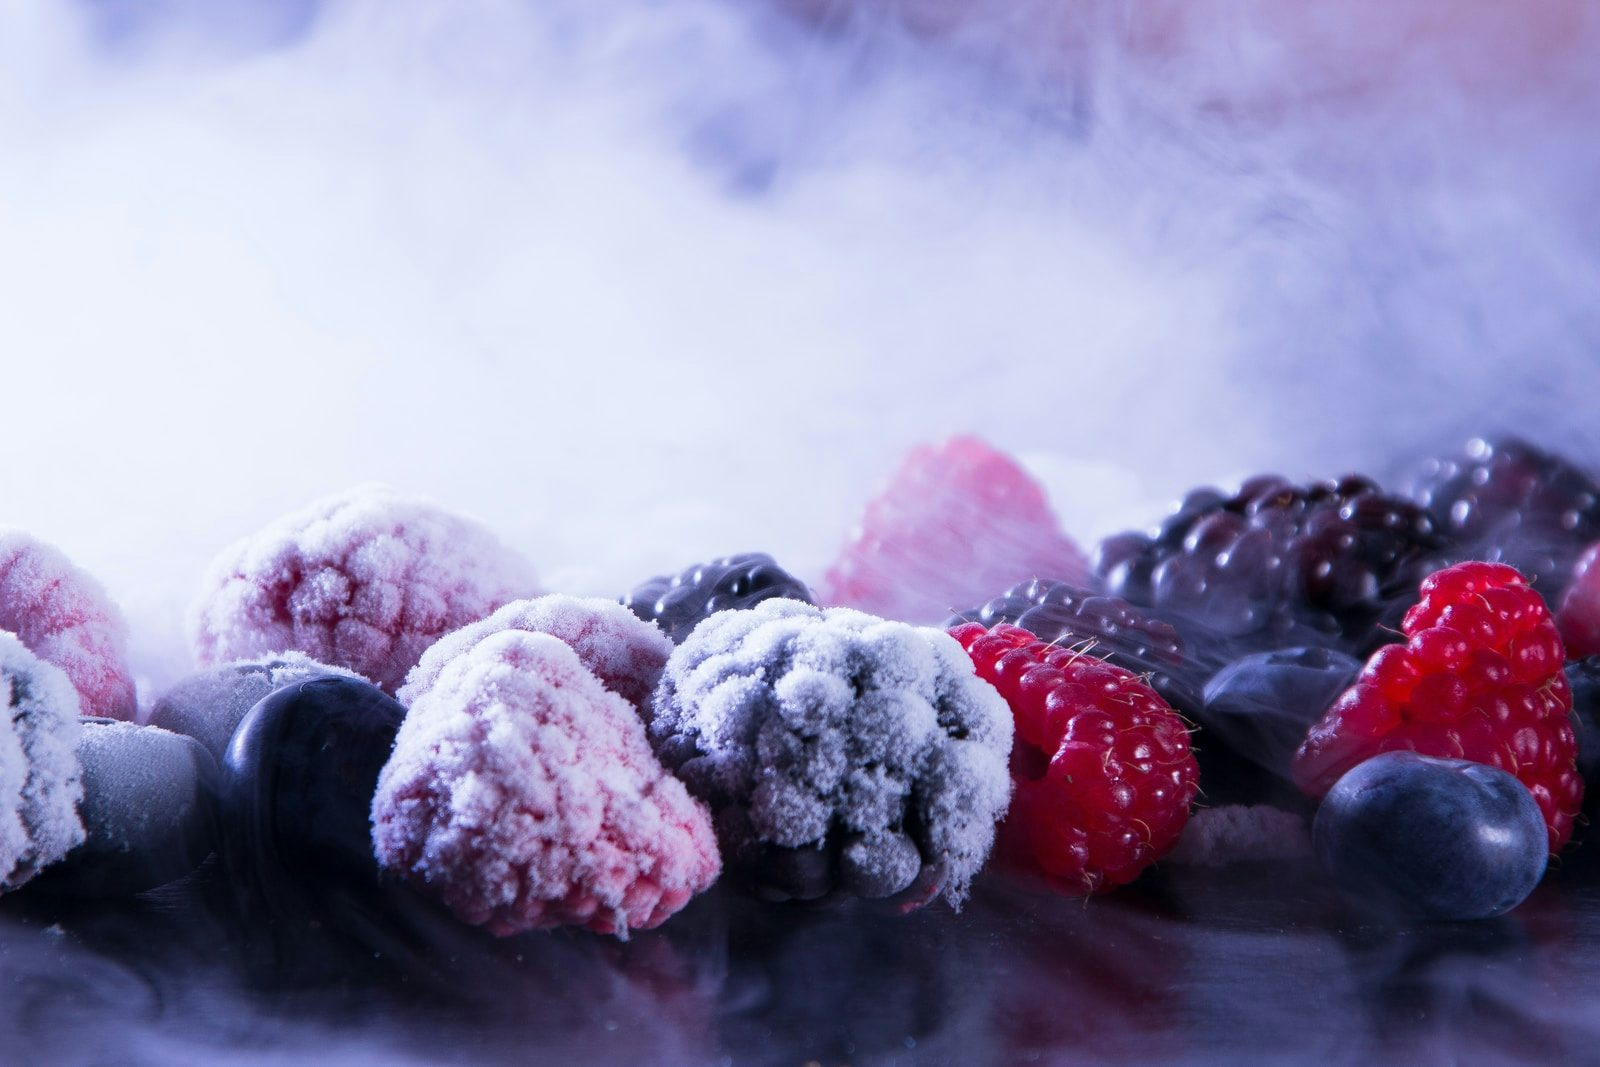 Frozen fruit milling